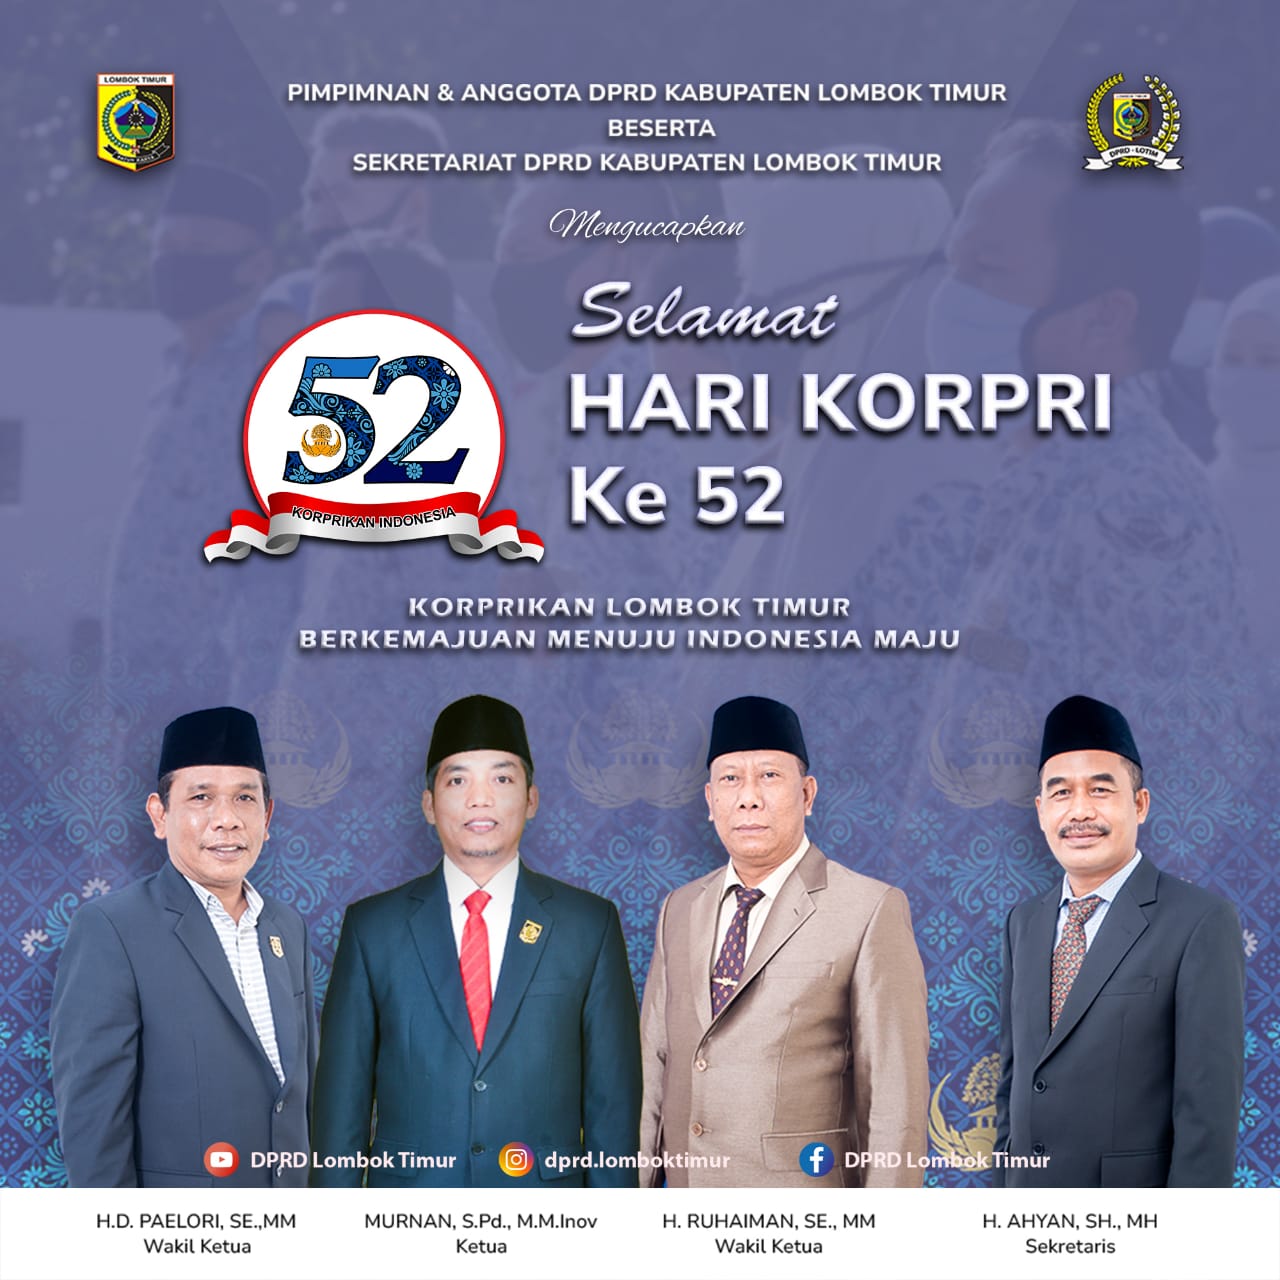 Pimpinan DPRD Lombok Timur Mengucapkan Hari KORPRI ke-52